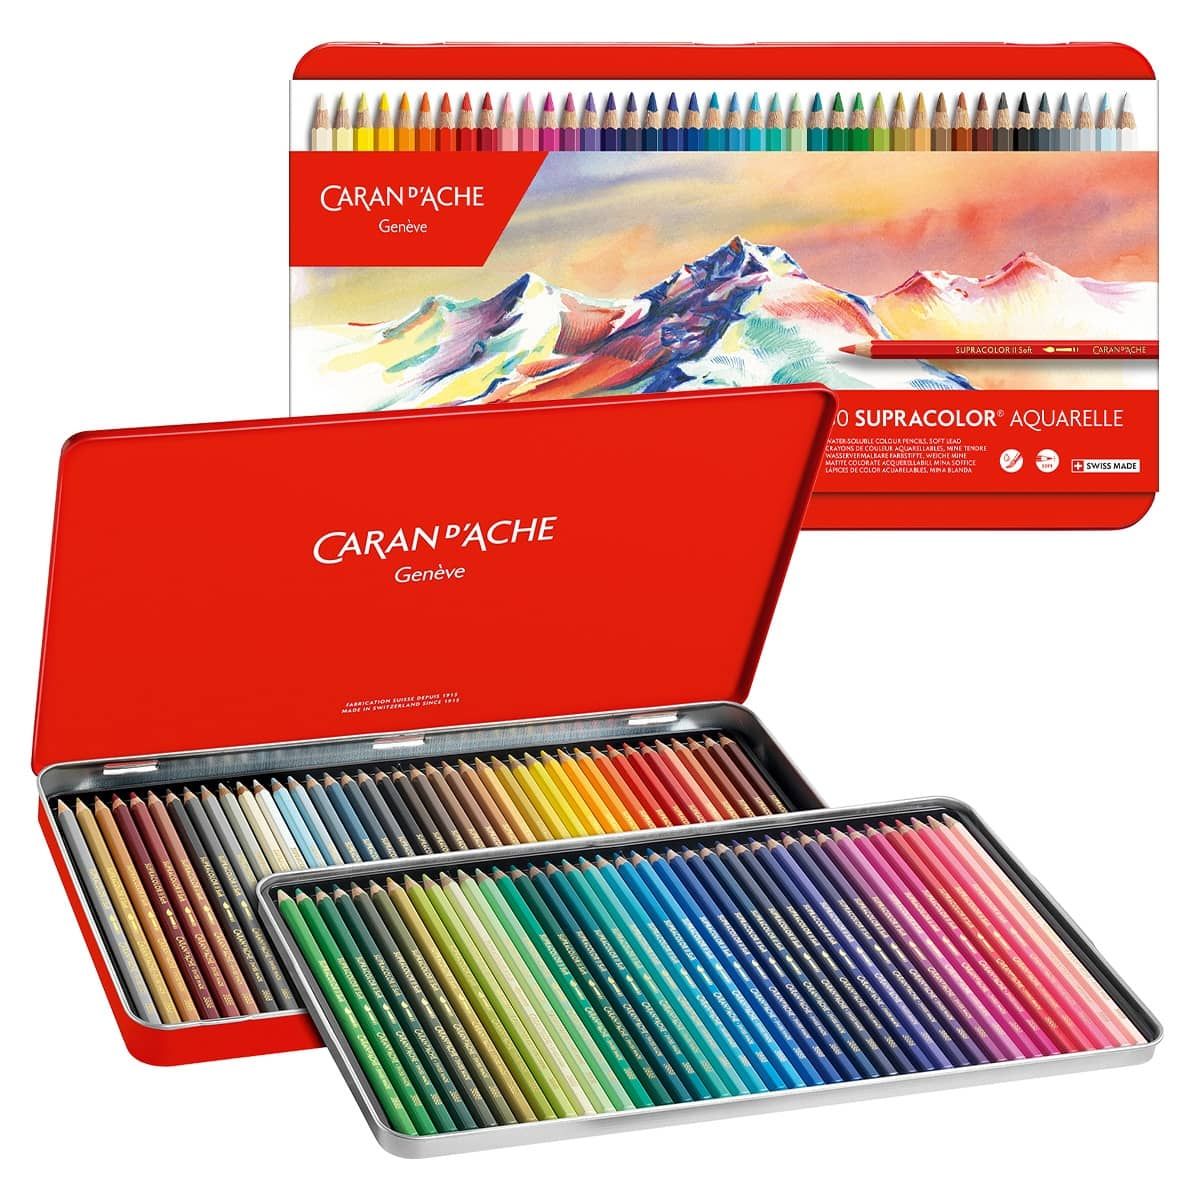 https://www.jerrysartarama.com/media/catalog/product/cache/ecb49a32eeb5603594b082bd5fe65733/c/a/caran-d-ache-supracolor-aquarelle-pencil-tin-set-80-asstd-33219_2.jpg